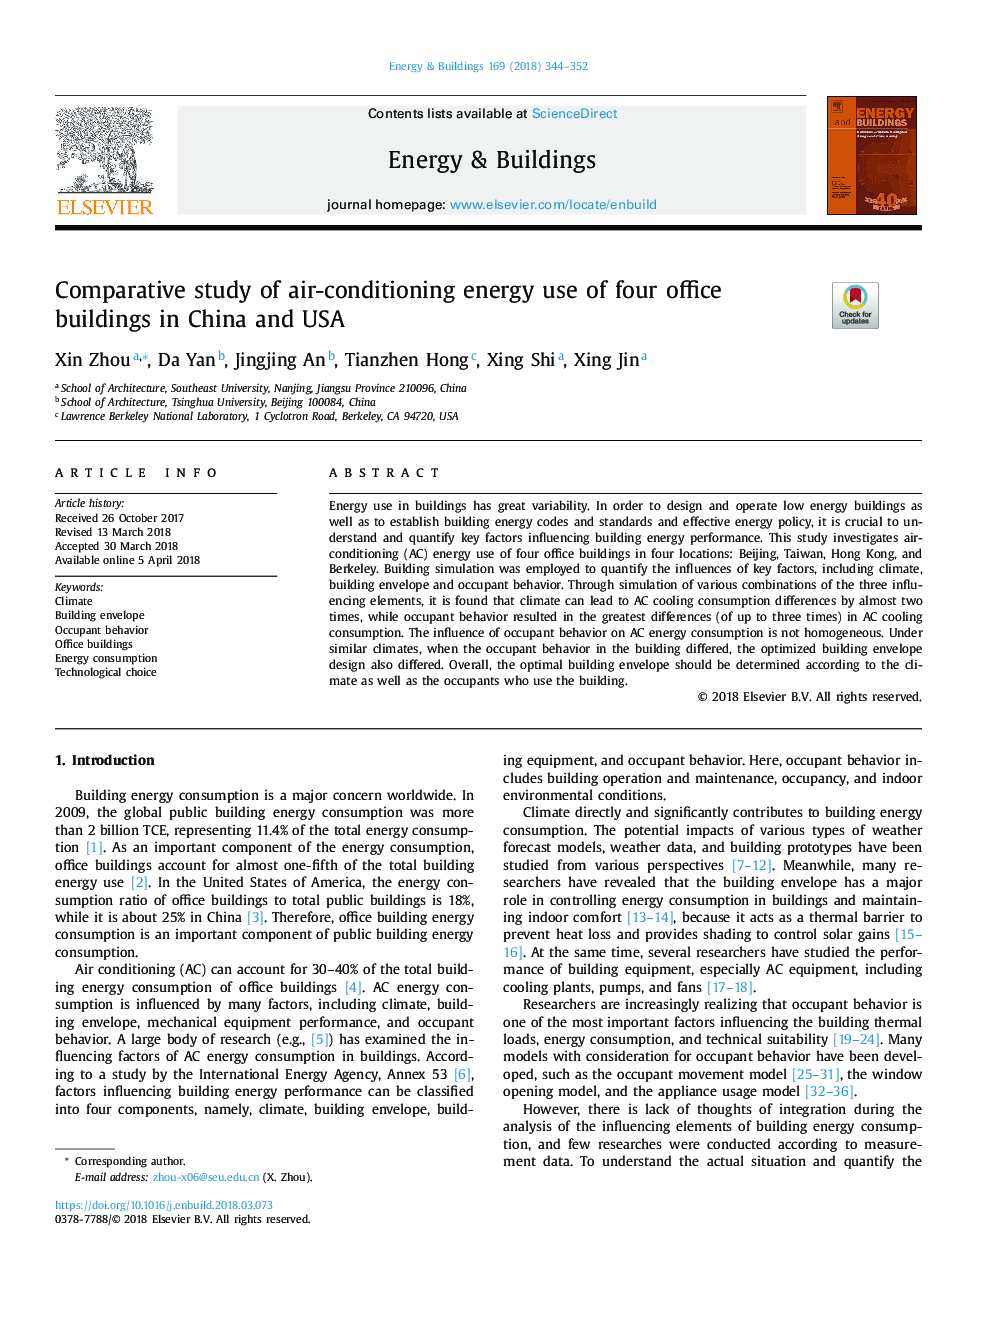 بررسی مقایسه ای استفاده از انرژی تهویه مطبوع از چهار ساختمان اداری در چین و ایالات متحده آمریکا 